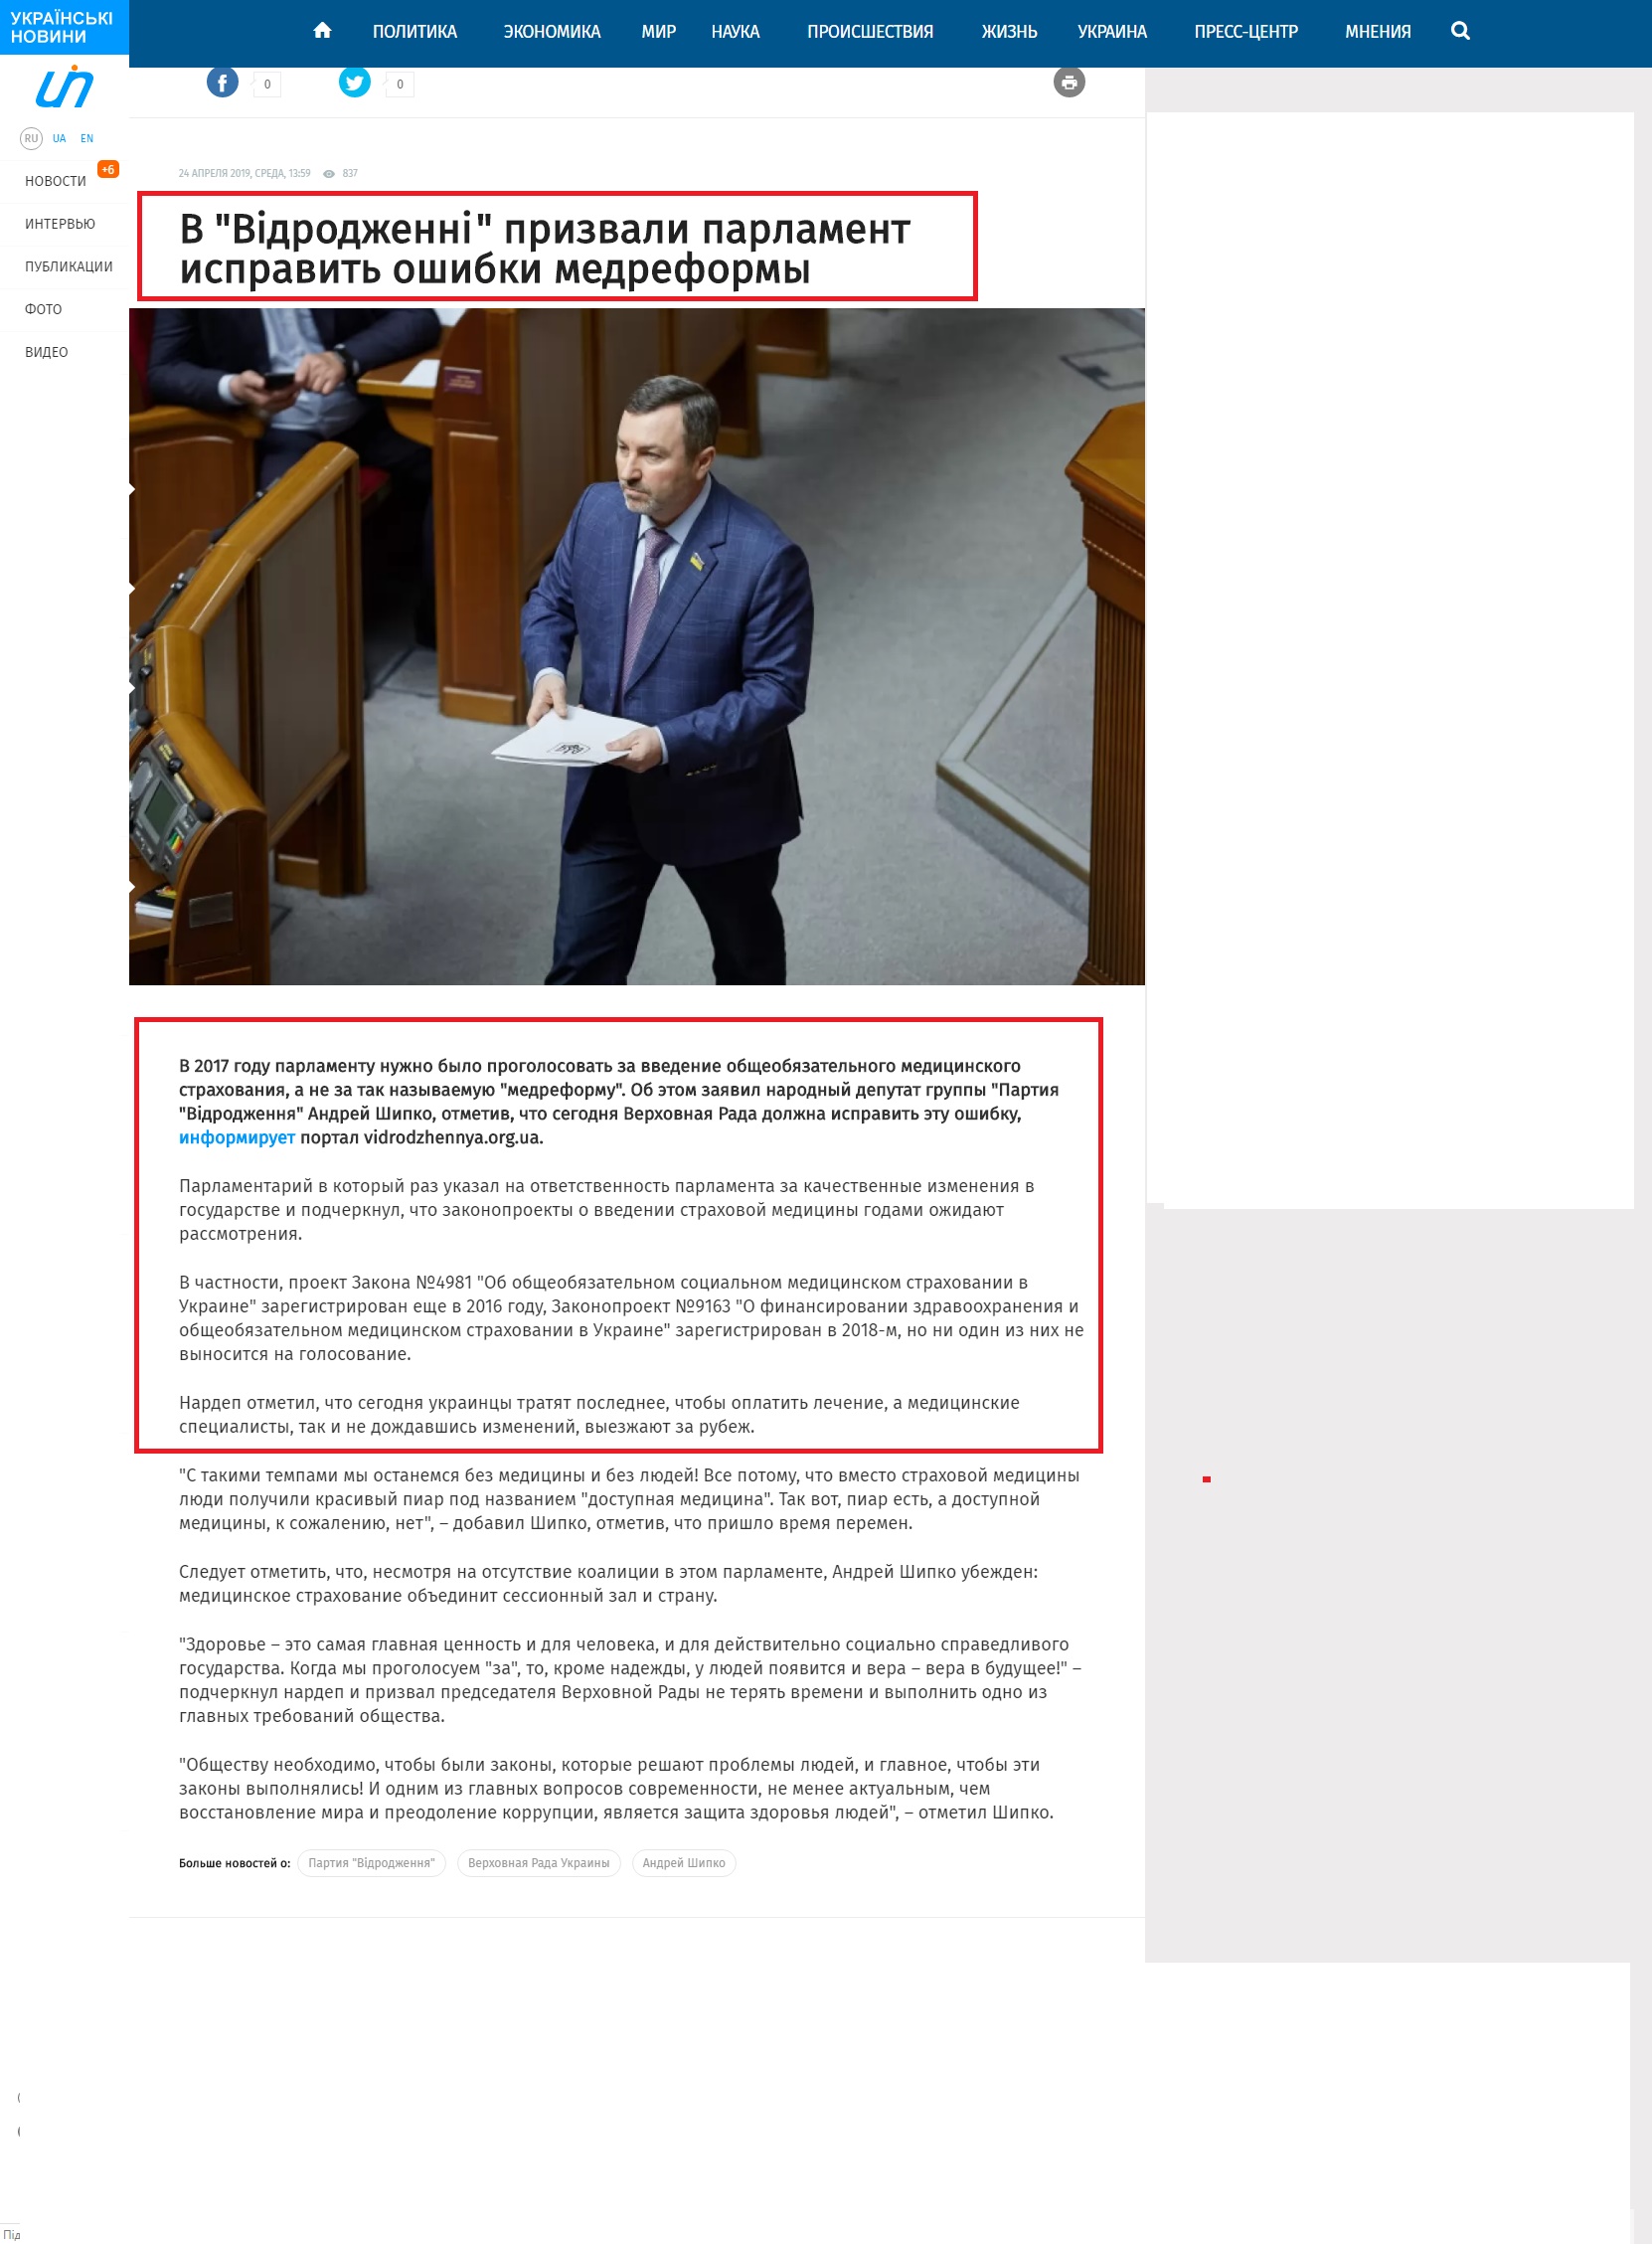 https://ukranews.com/news/628471-v-vidrodzhenni-prizvali-parlament-ispravit-oshibki-medreformy